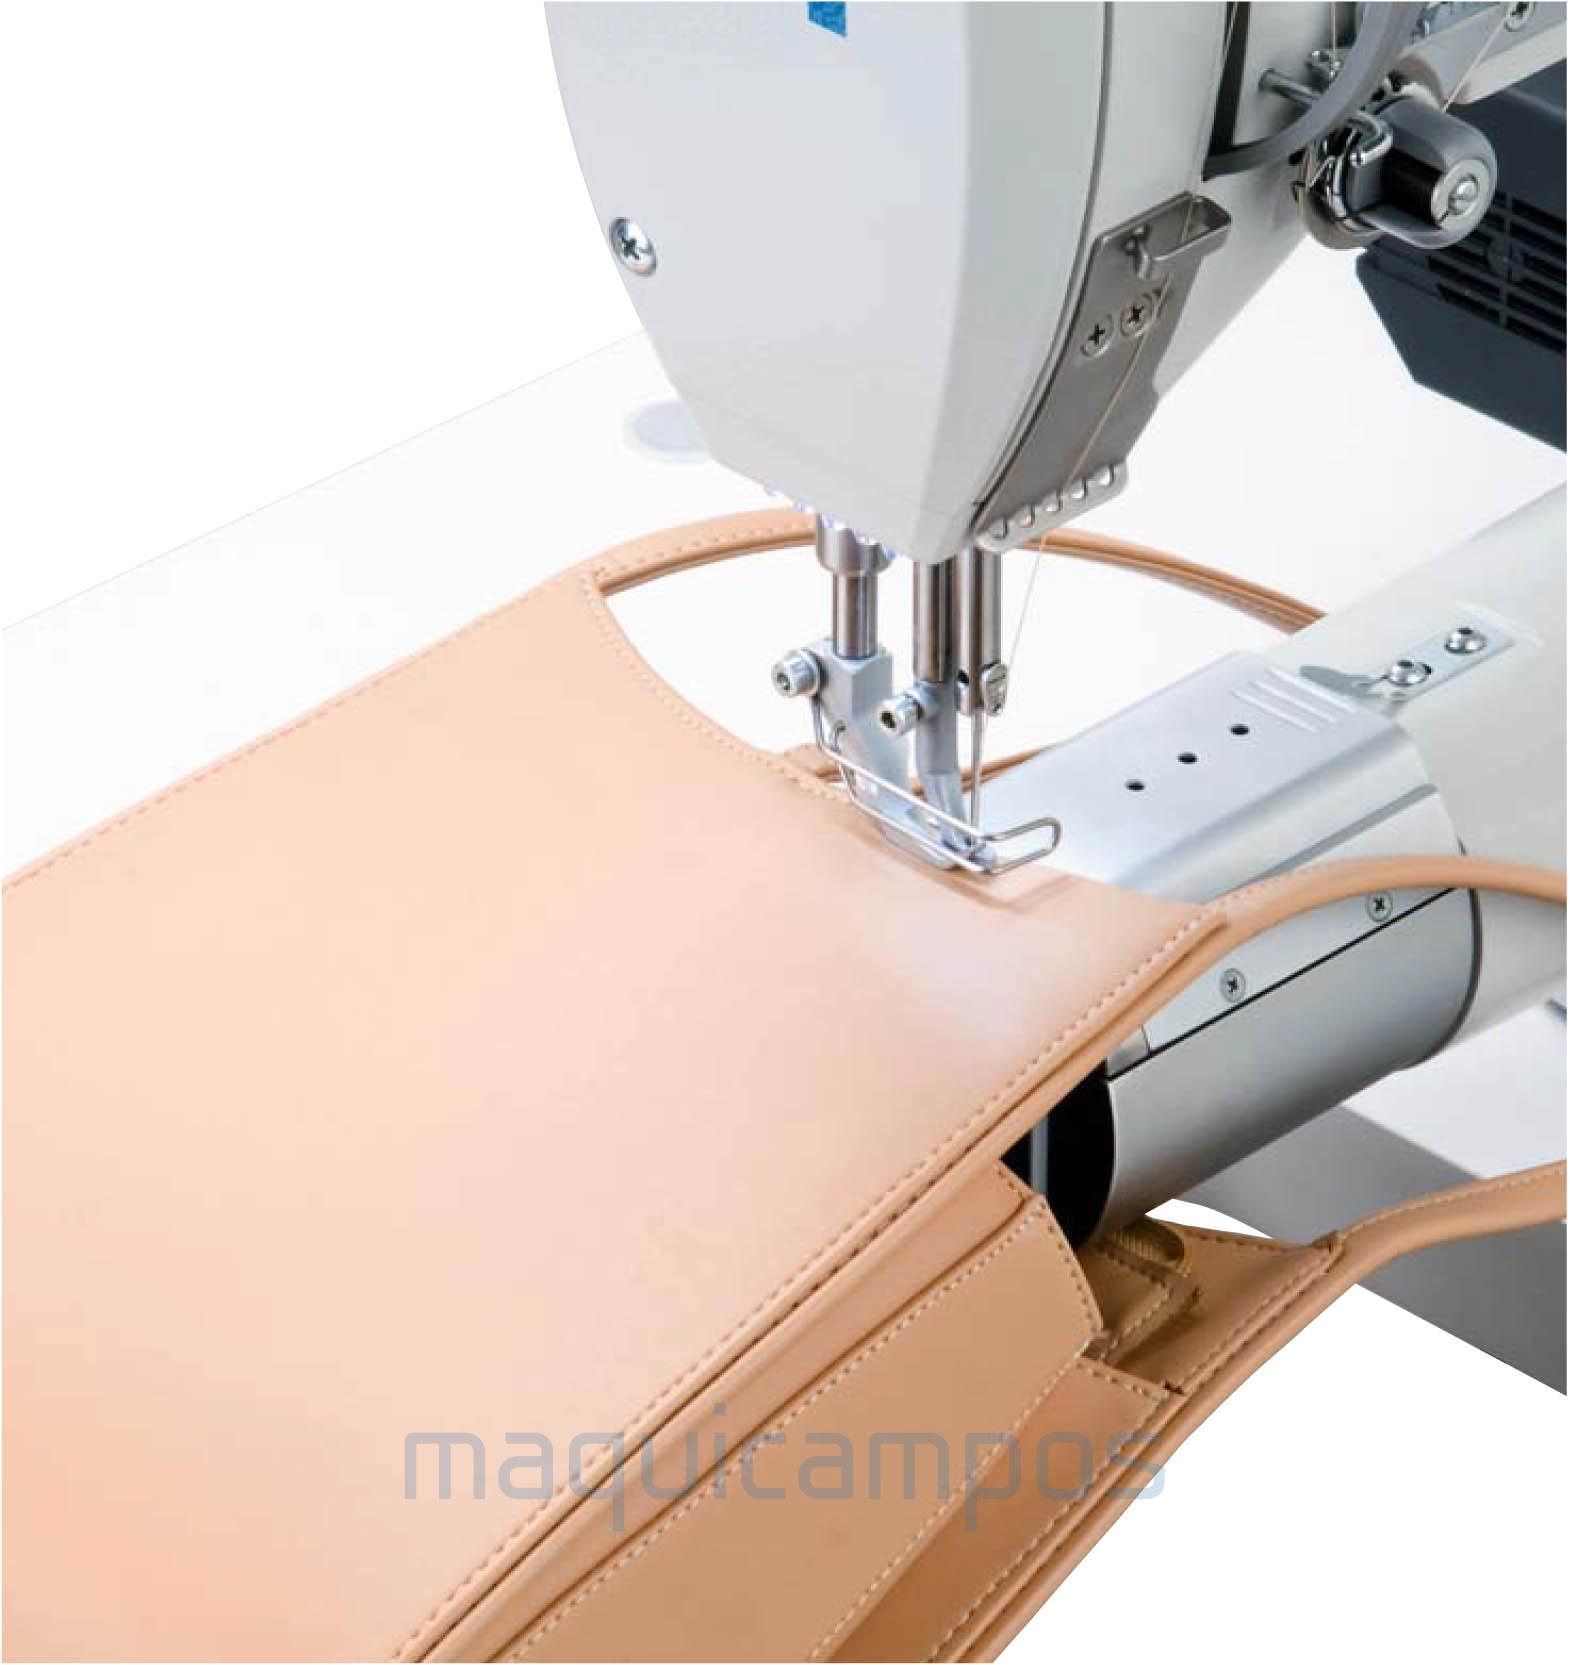 Durkopp Adler 869-180020  Arm Sewing Machine 